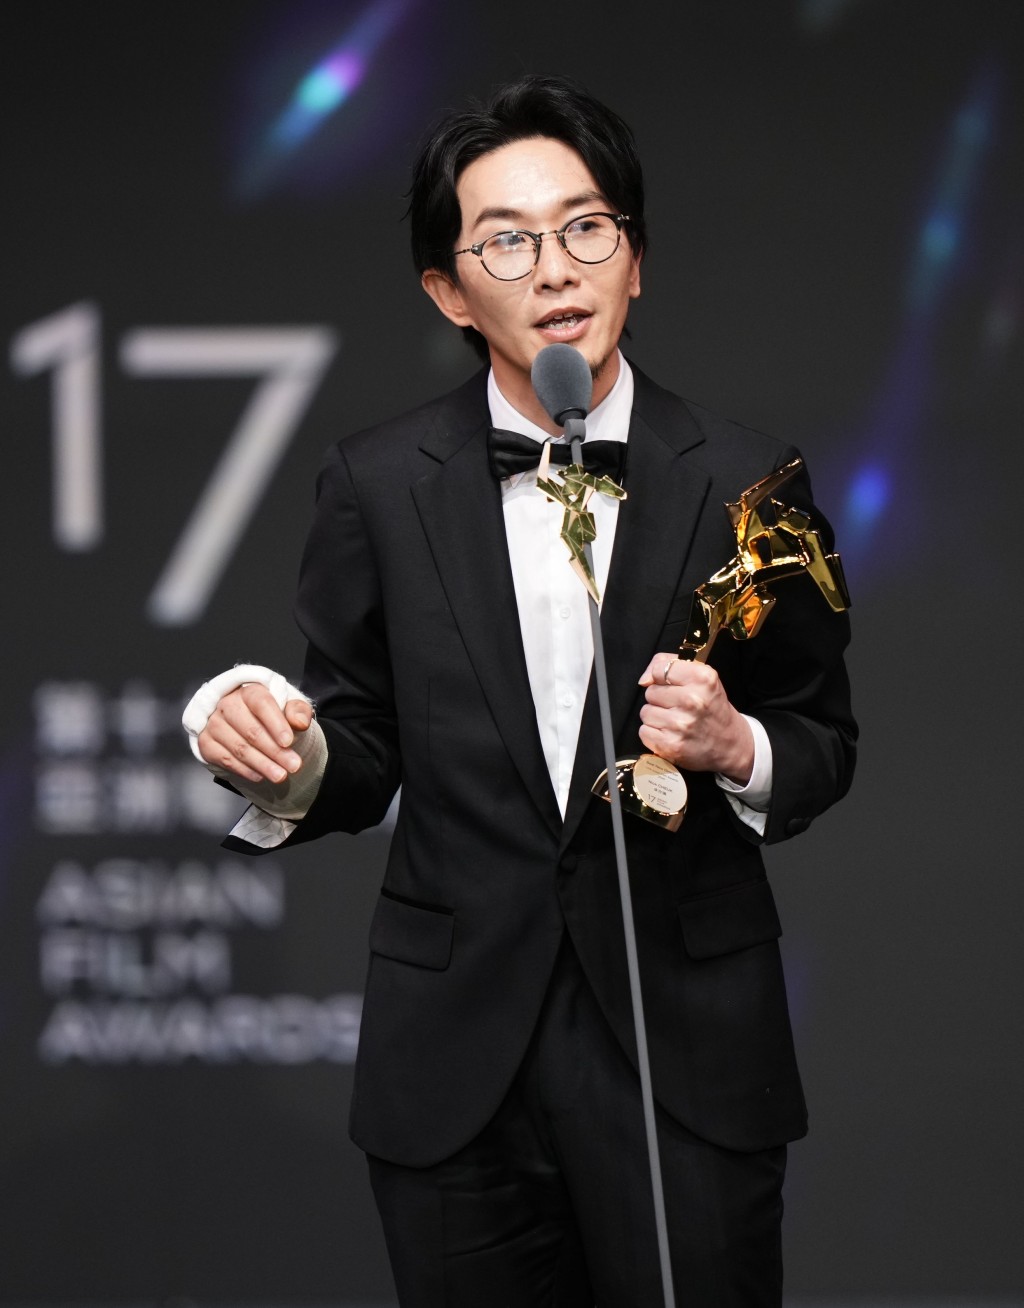 卓亦谦早前获得「第17届亚洲电影大奖」的「最佳新导演」。